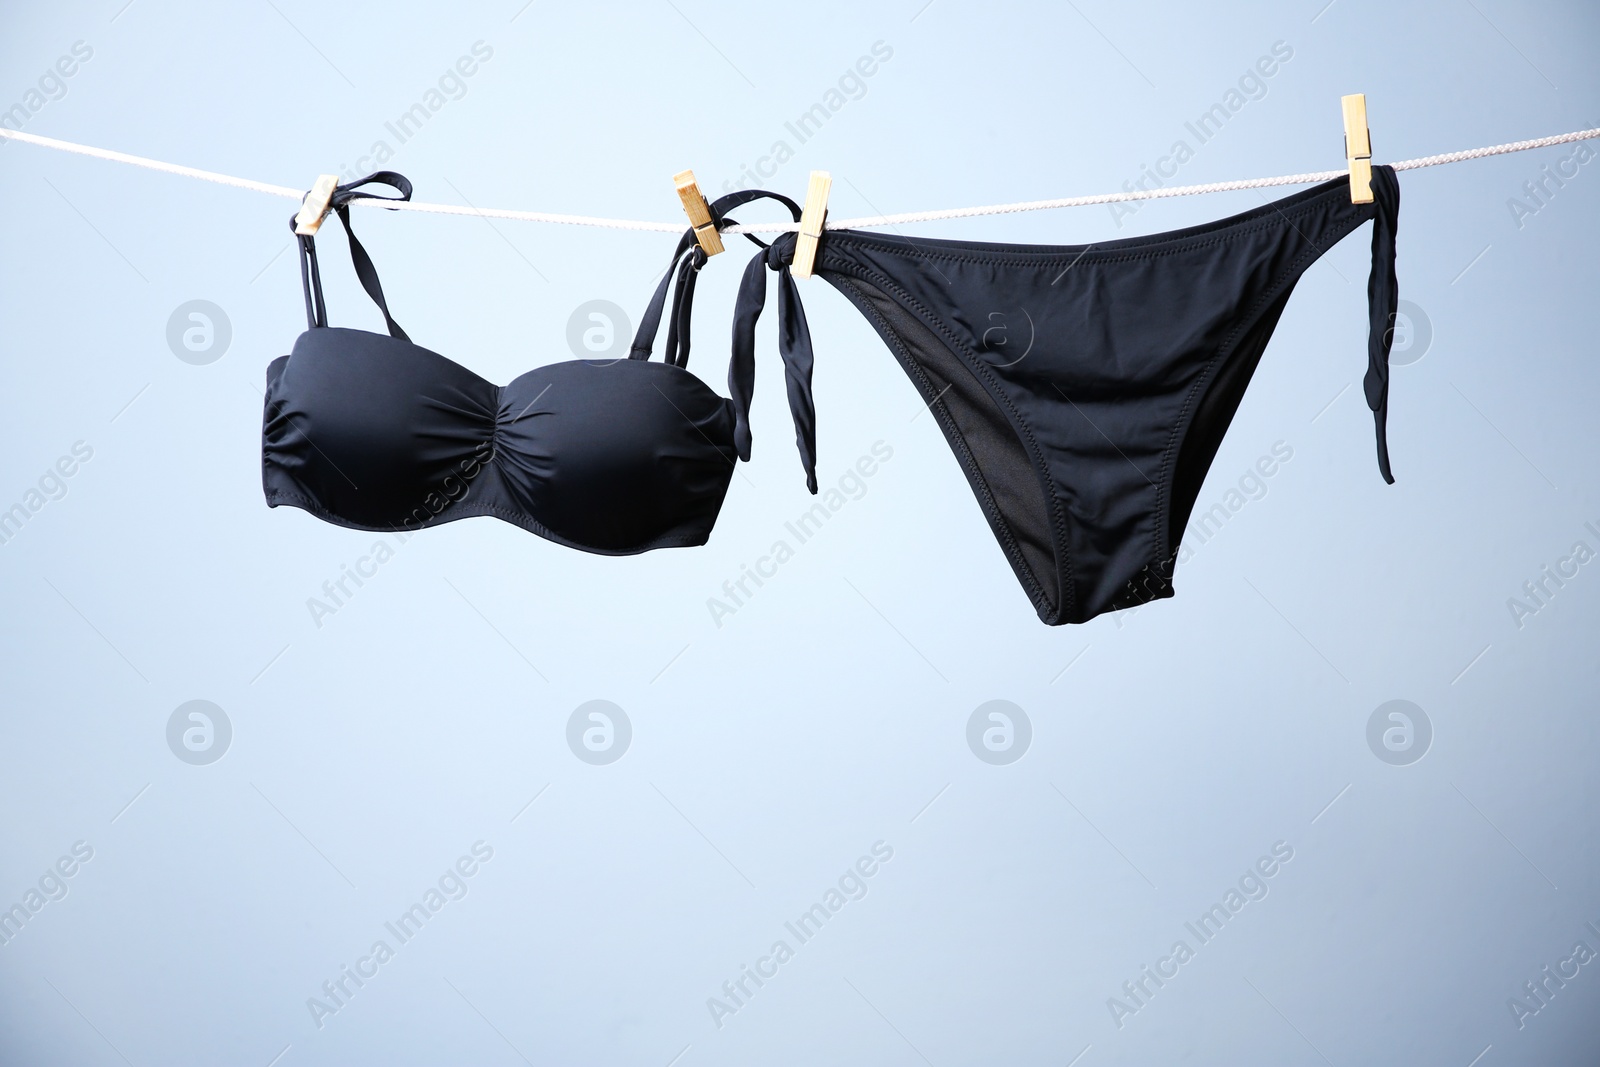 Photo of Stylish bikini hanging on rope against color background